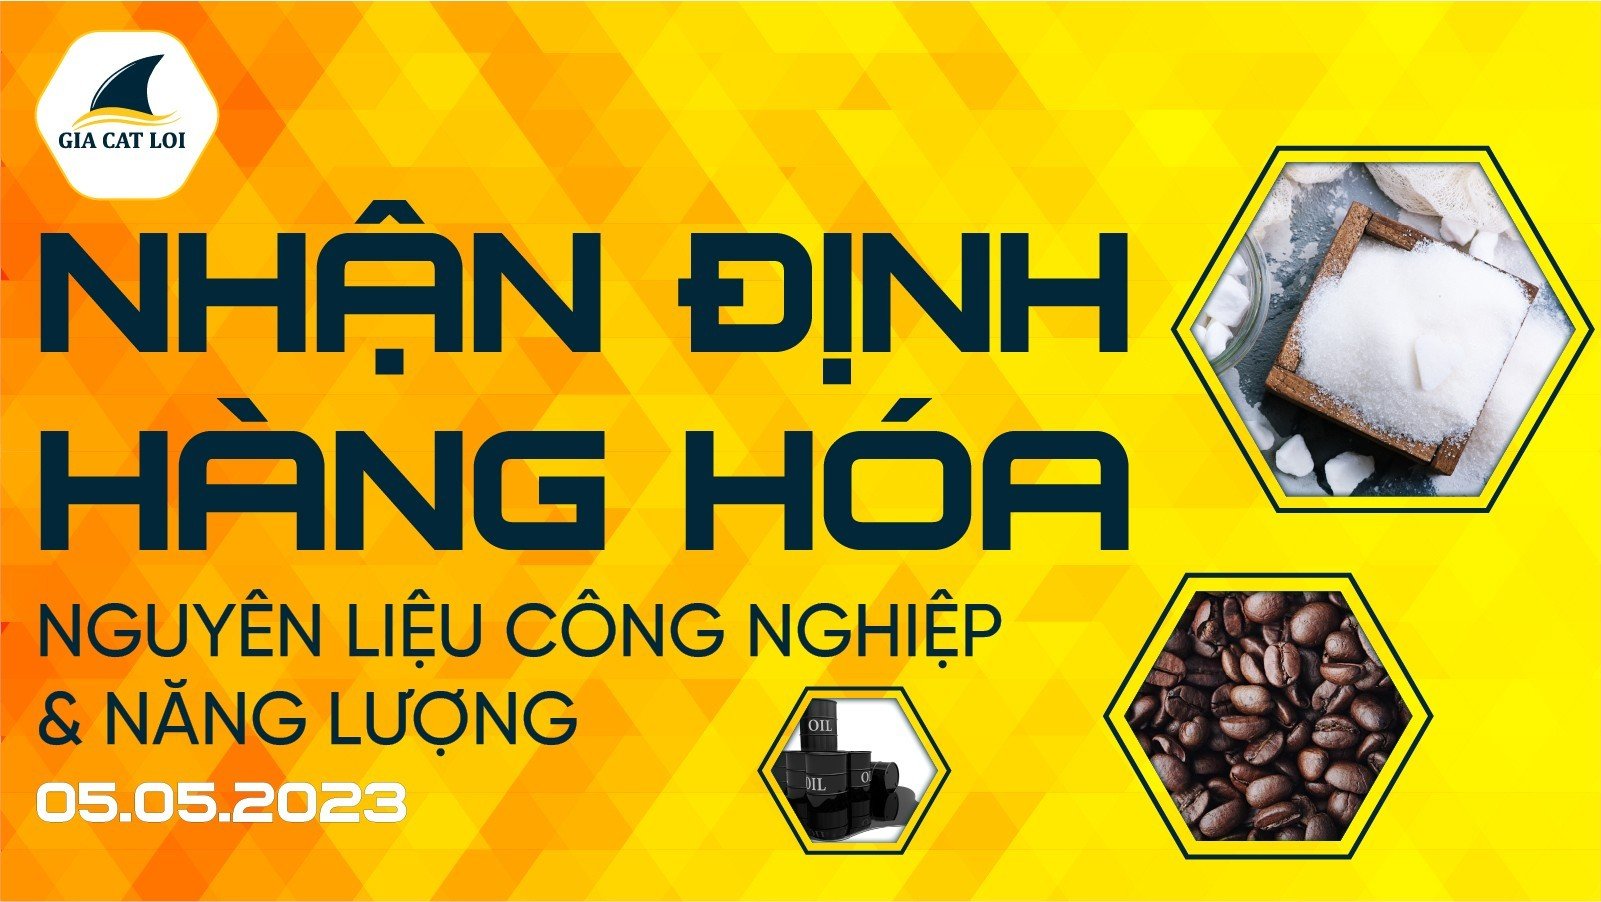 nguyen-lieu-cong-nghiep-nang-luong-05-05-2023